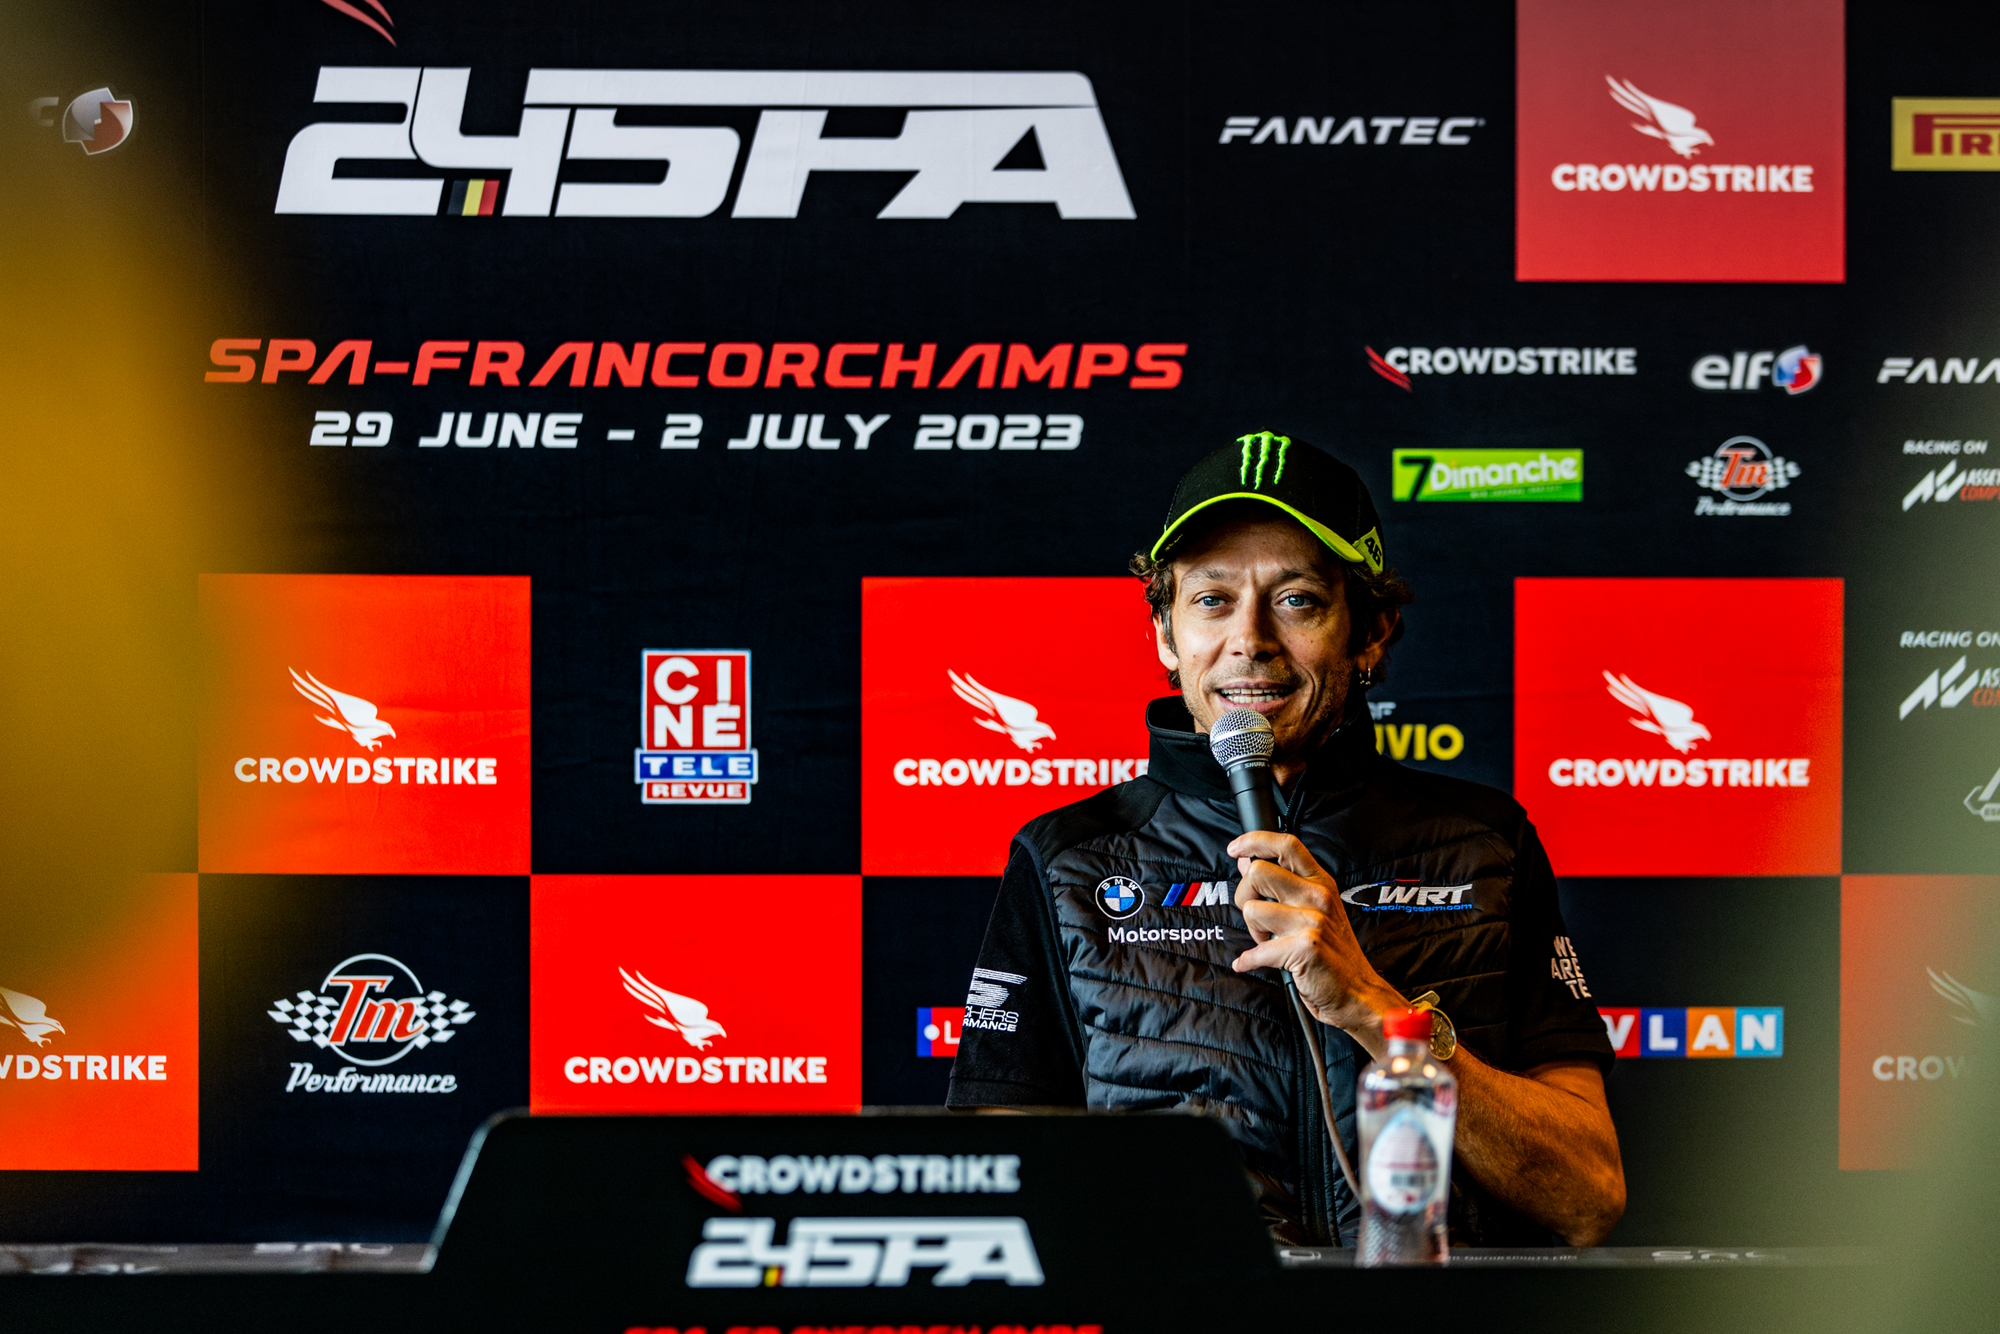 Pressekonferenz mit Valentino Rossi in Spa